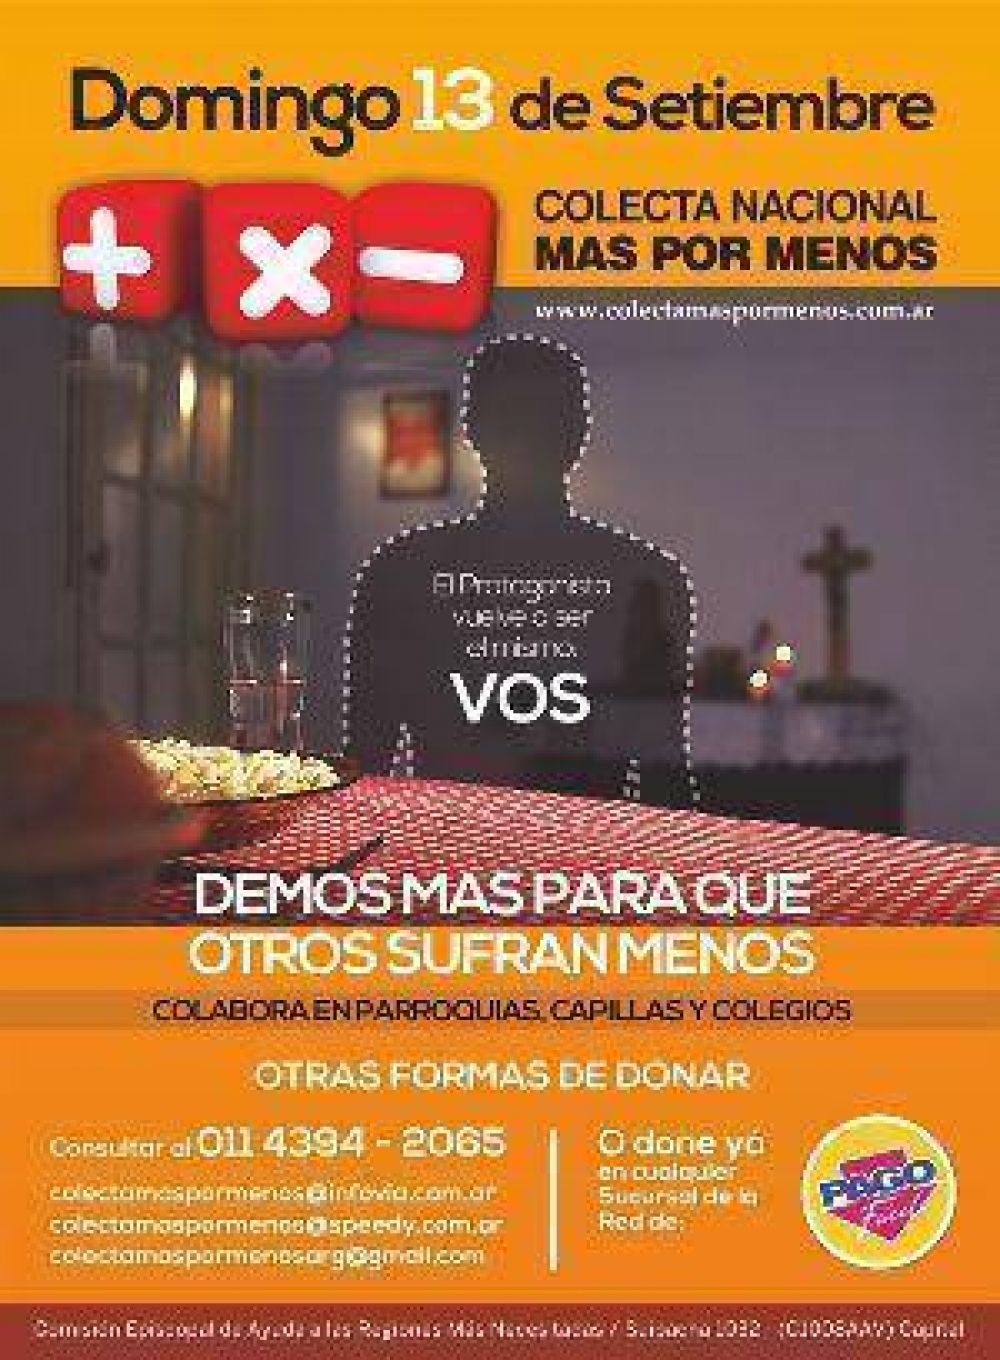 Mons. Dus: Ms por Menos, la solidaridad propuesta de modo abierto y generoso